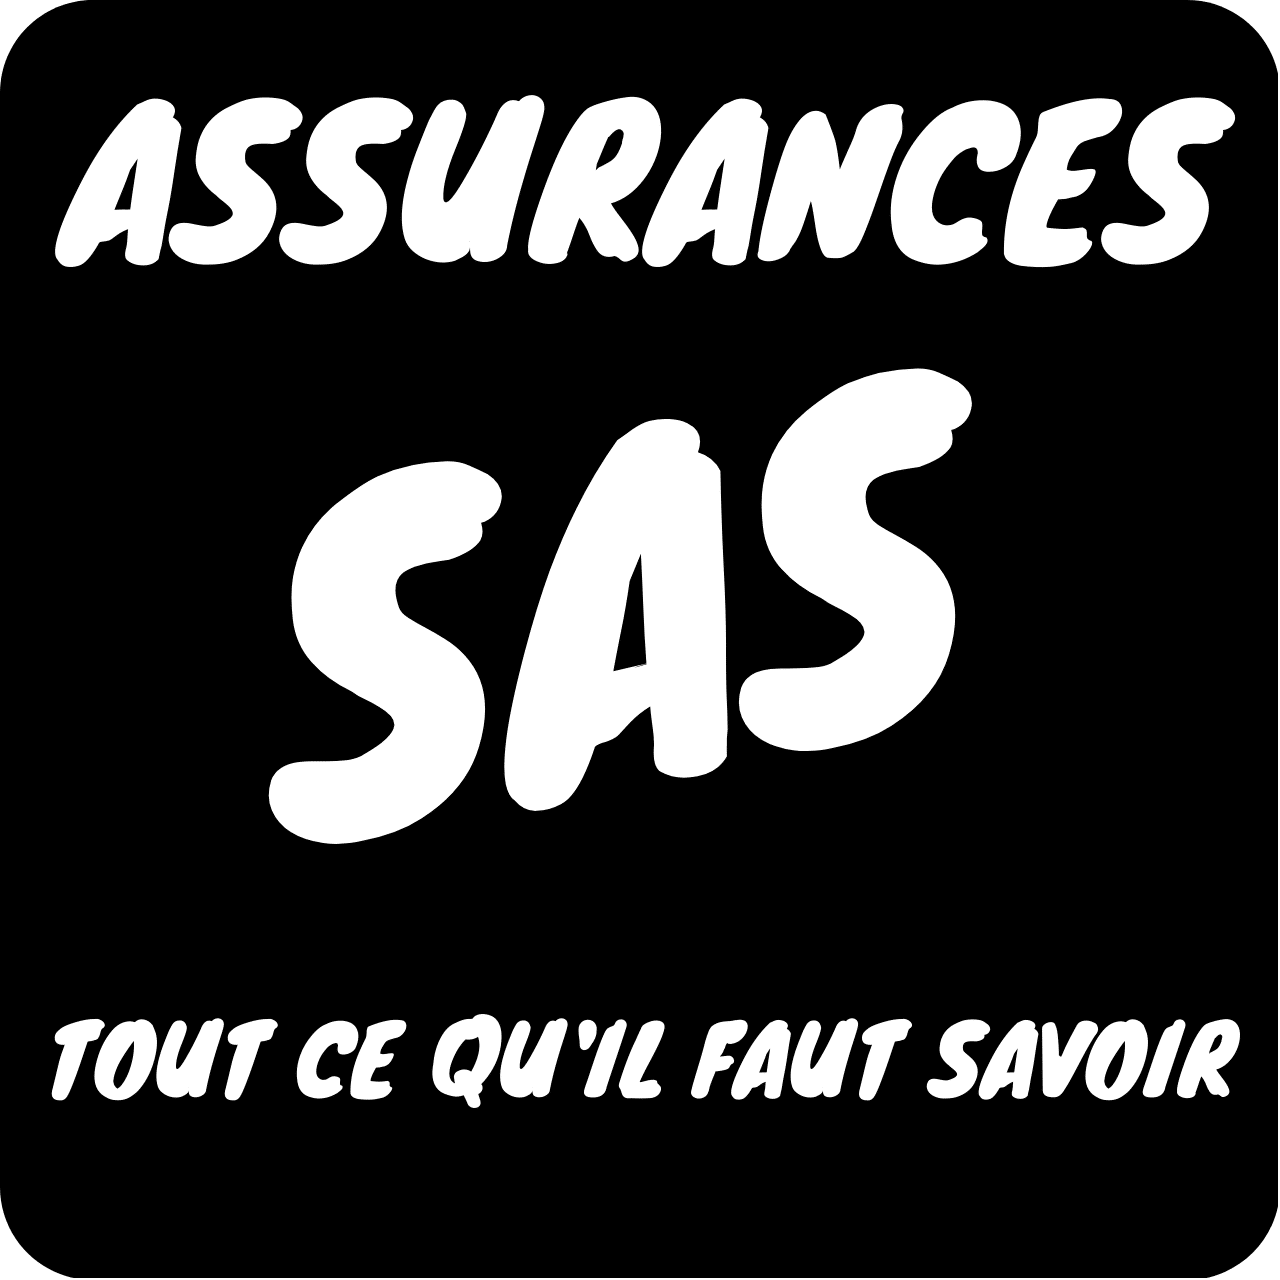 assurances SAS